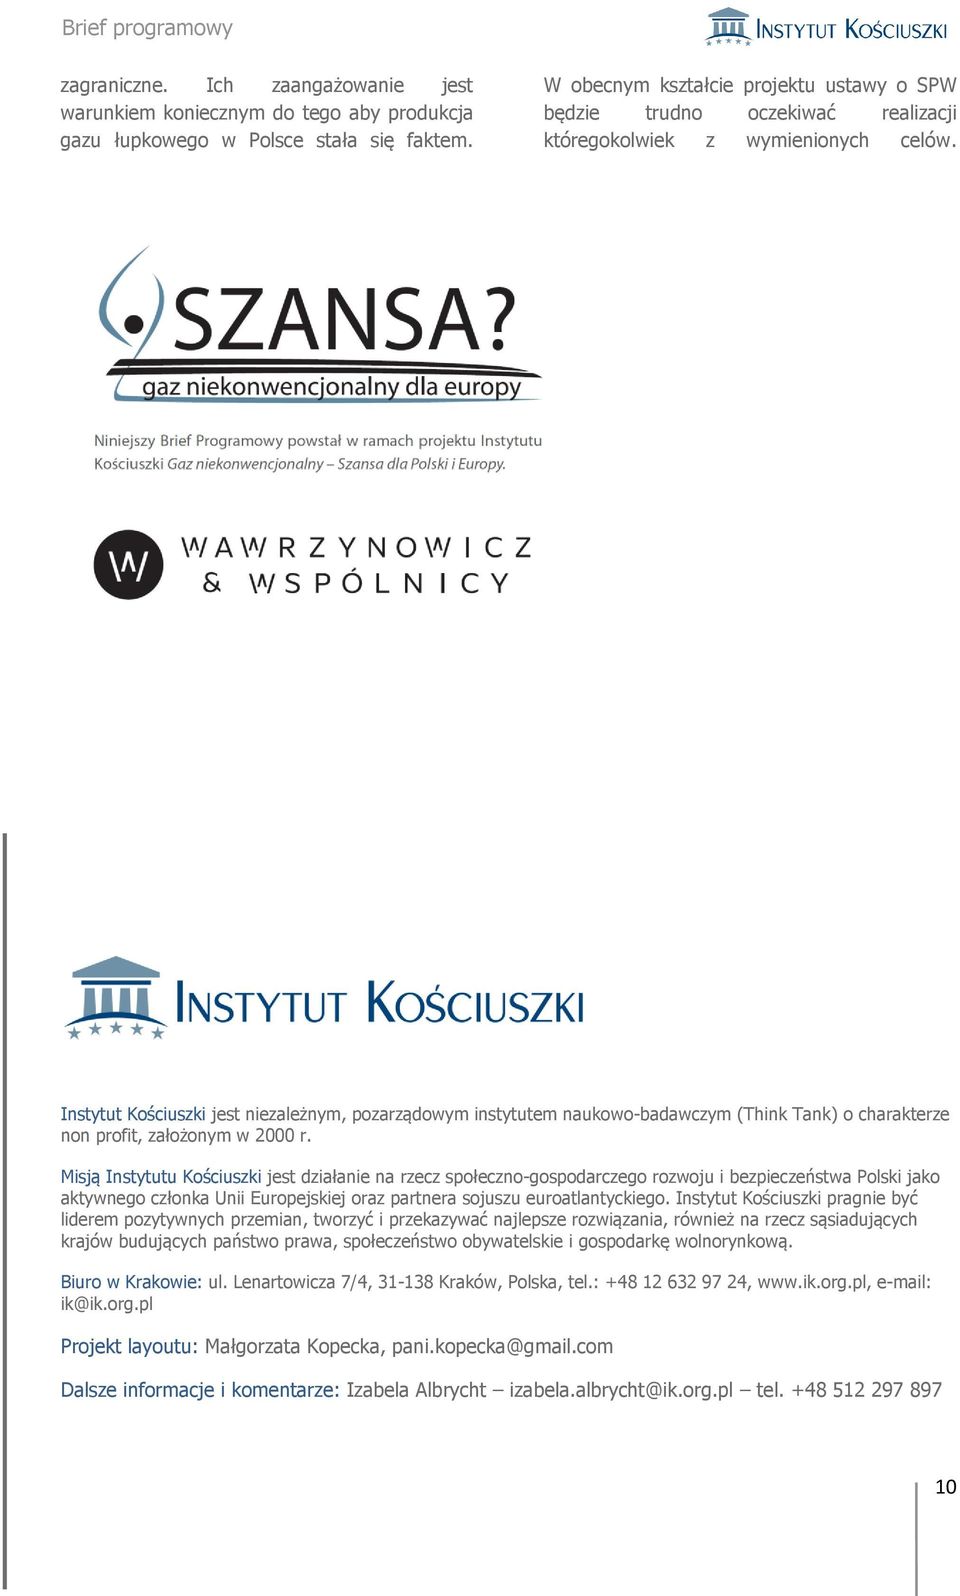 Instytut Kościuszki jest niezależnym, pozarządowym instytutem naukowo-badawczym (Think Tank) o charakterze non profit, założonym w 2000 r.